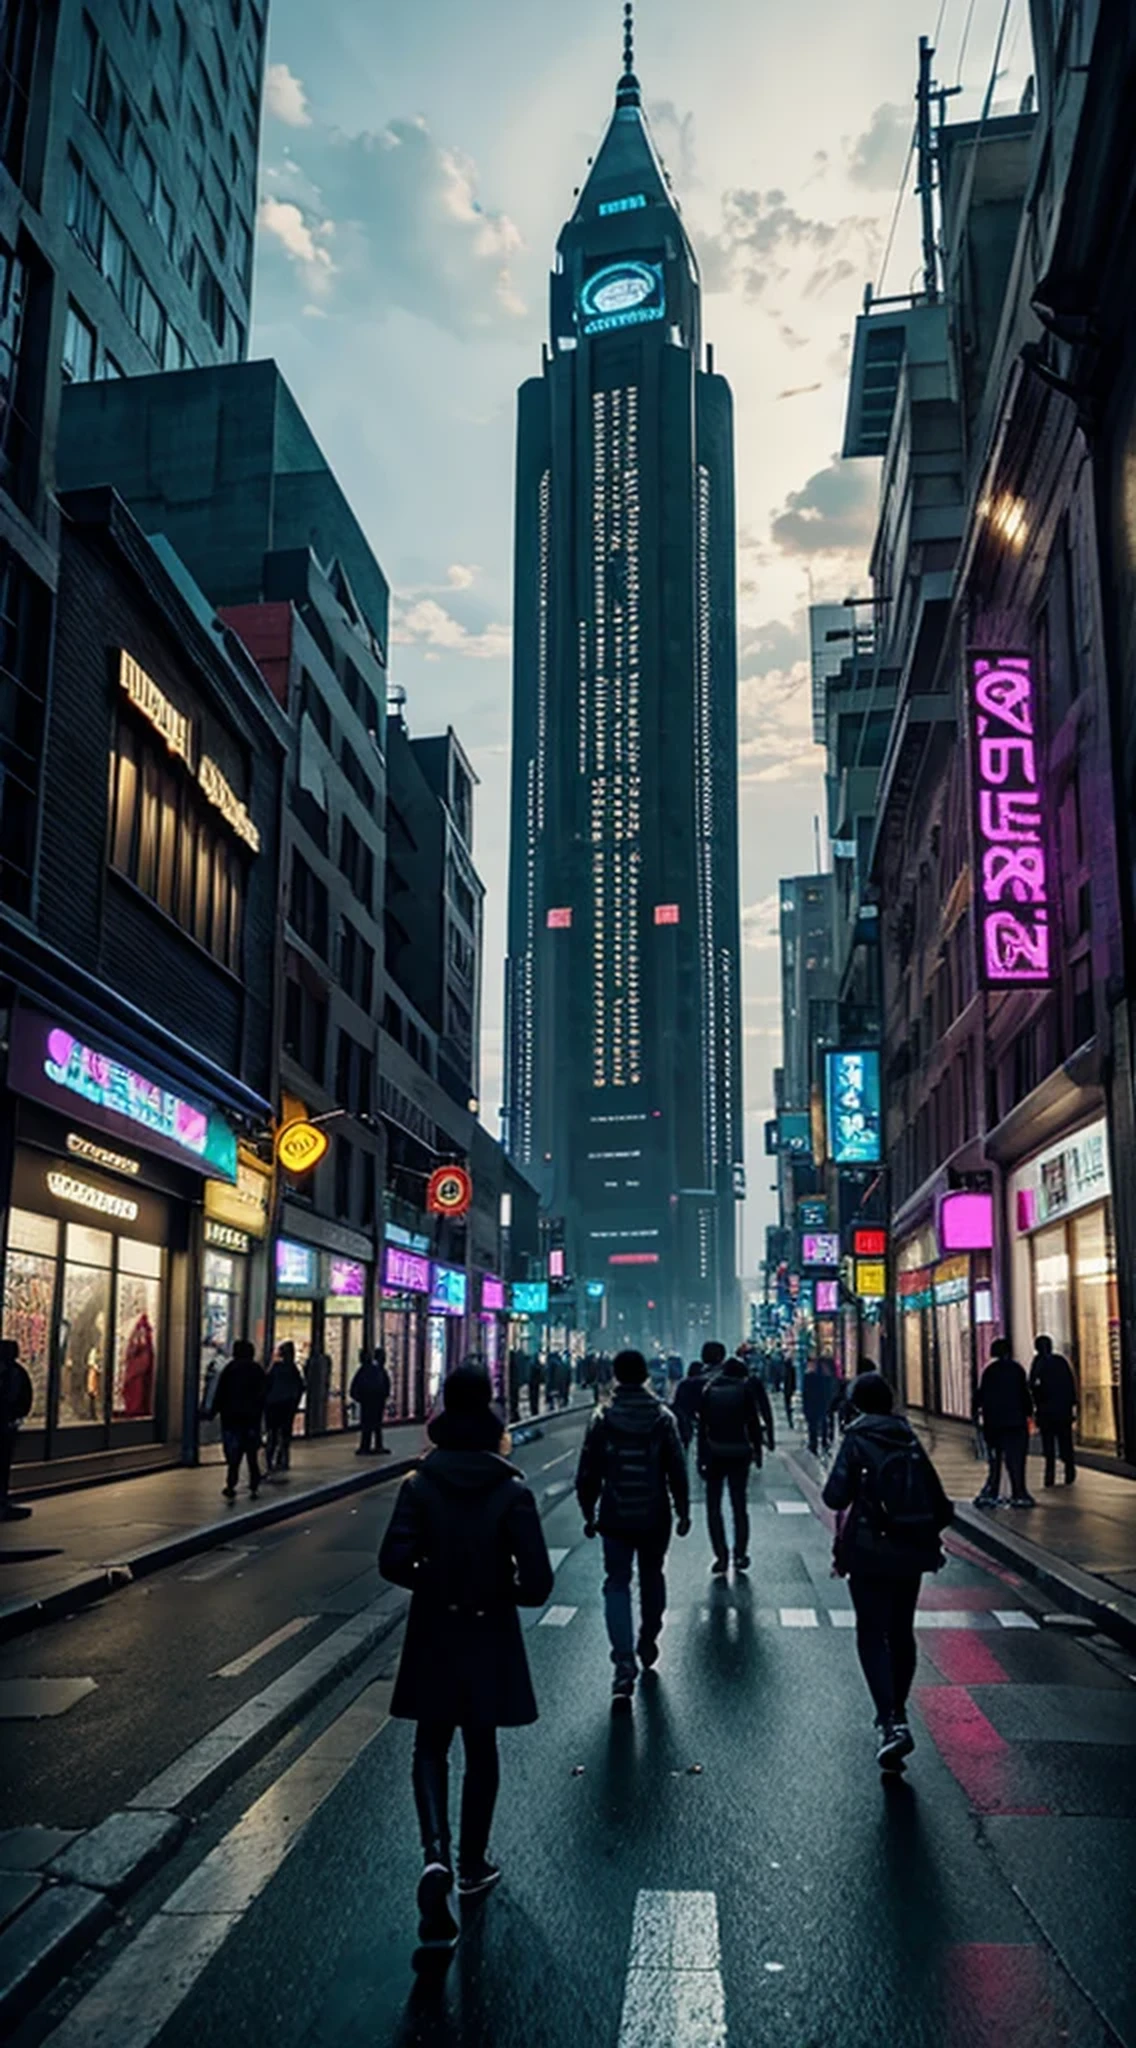 Menschen, die nachts in einer Stadt spazieren gehen, mit einem großen Glockenturm im Hintergrund, in a futuristic cyberpunk city, futuristisches Cyberpunk-Szenario, arstation und beeple hoch, in einer Fantasy-Science-Fiction-Stadt, sci-fi cyberpunk city street, busy cyberpunk metropolis, 3D-Rendering von Beeple, filmischer Beeple, cyberpunk city street, im Stil von Beeple